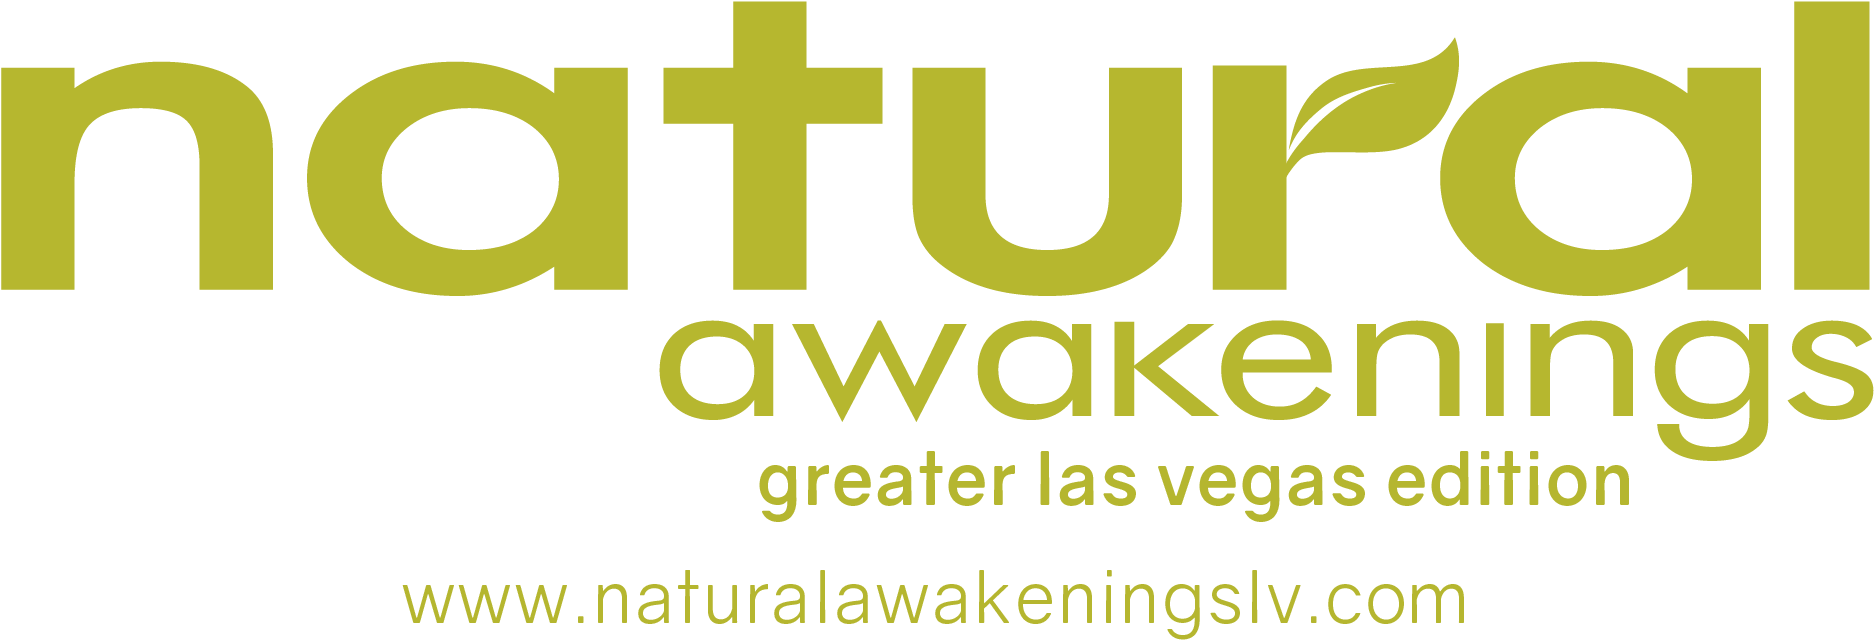 Natural Awakenings Las Vegas Edition Logo